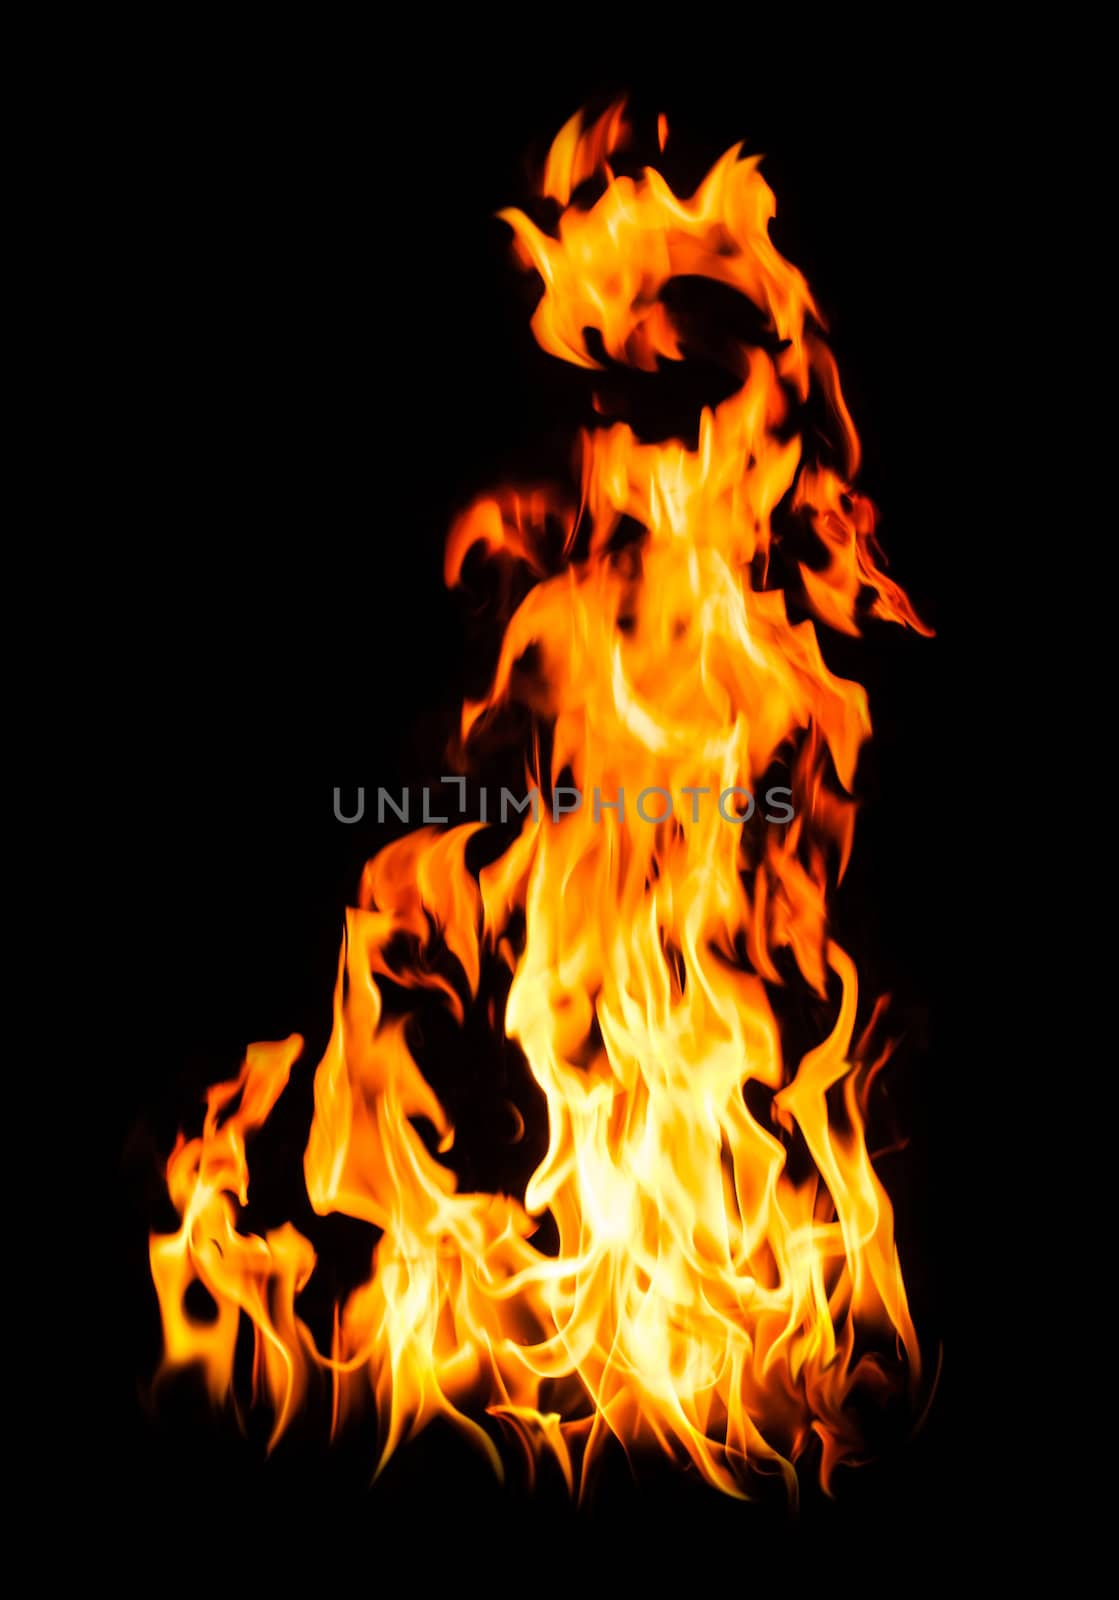 Fire flames by palinchak